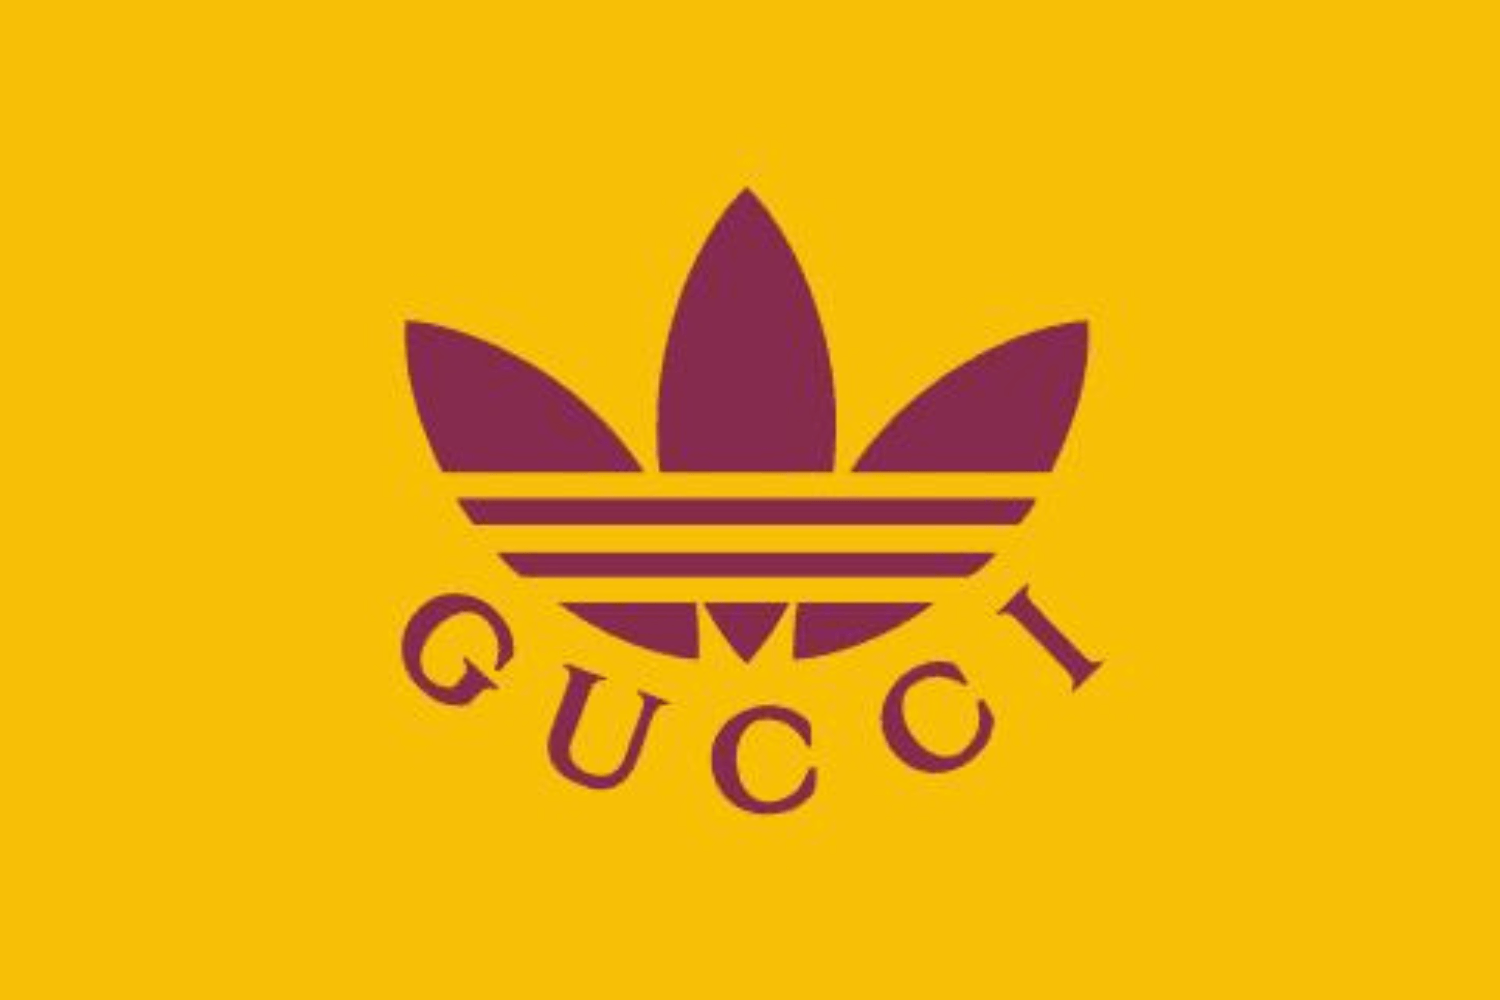 Offizielle Release Infos zur adidas x Gucci Kollektion